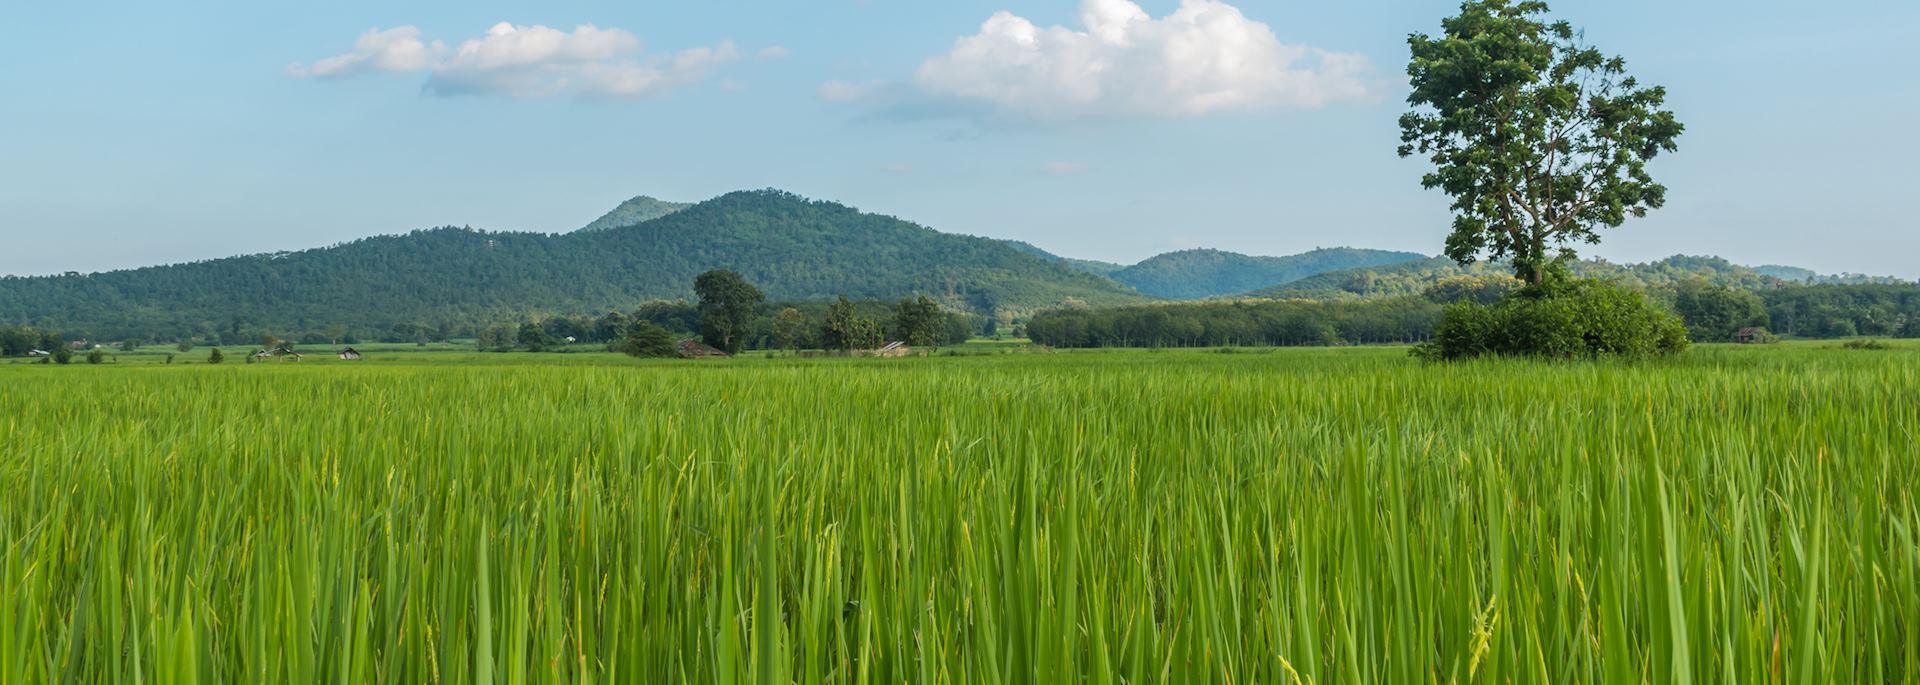 Paddy field in Loei Province